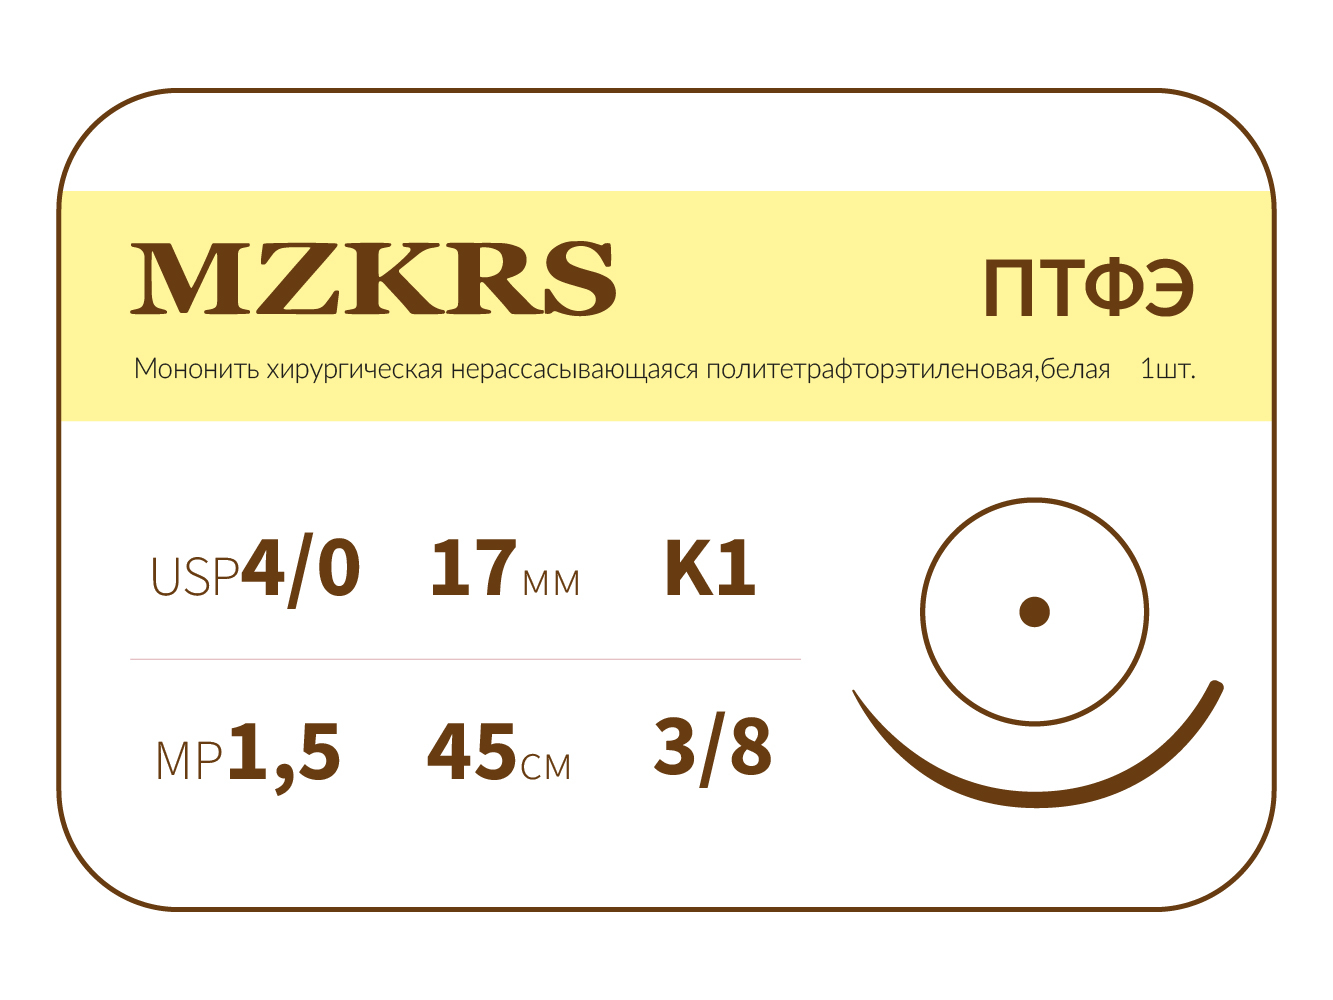 1738К-Premium 4/0 (1.5) 45 ПТФЭ хирургическая нить политетрафторэтиленовая, MZKRS (Россия)